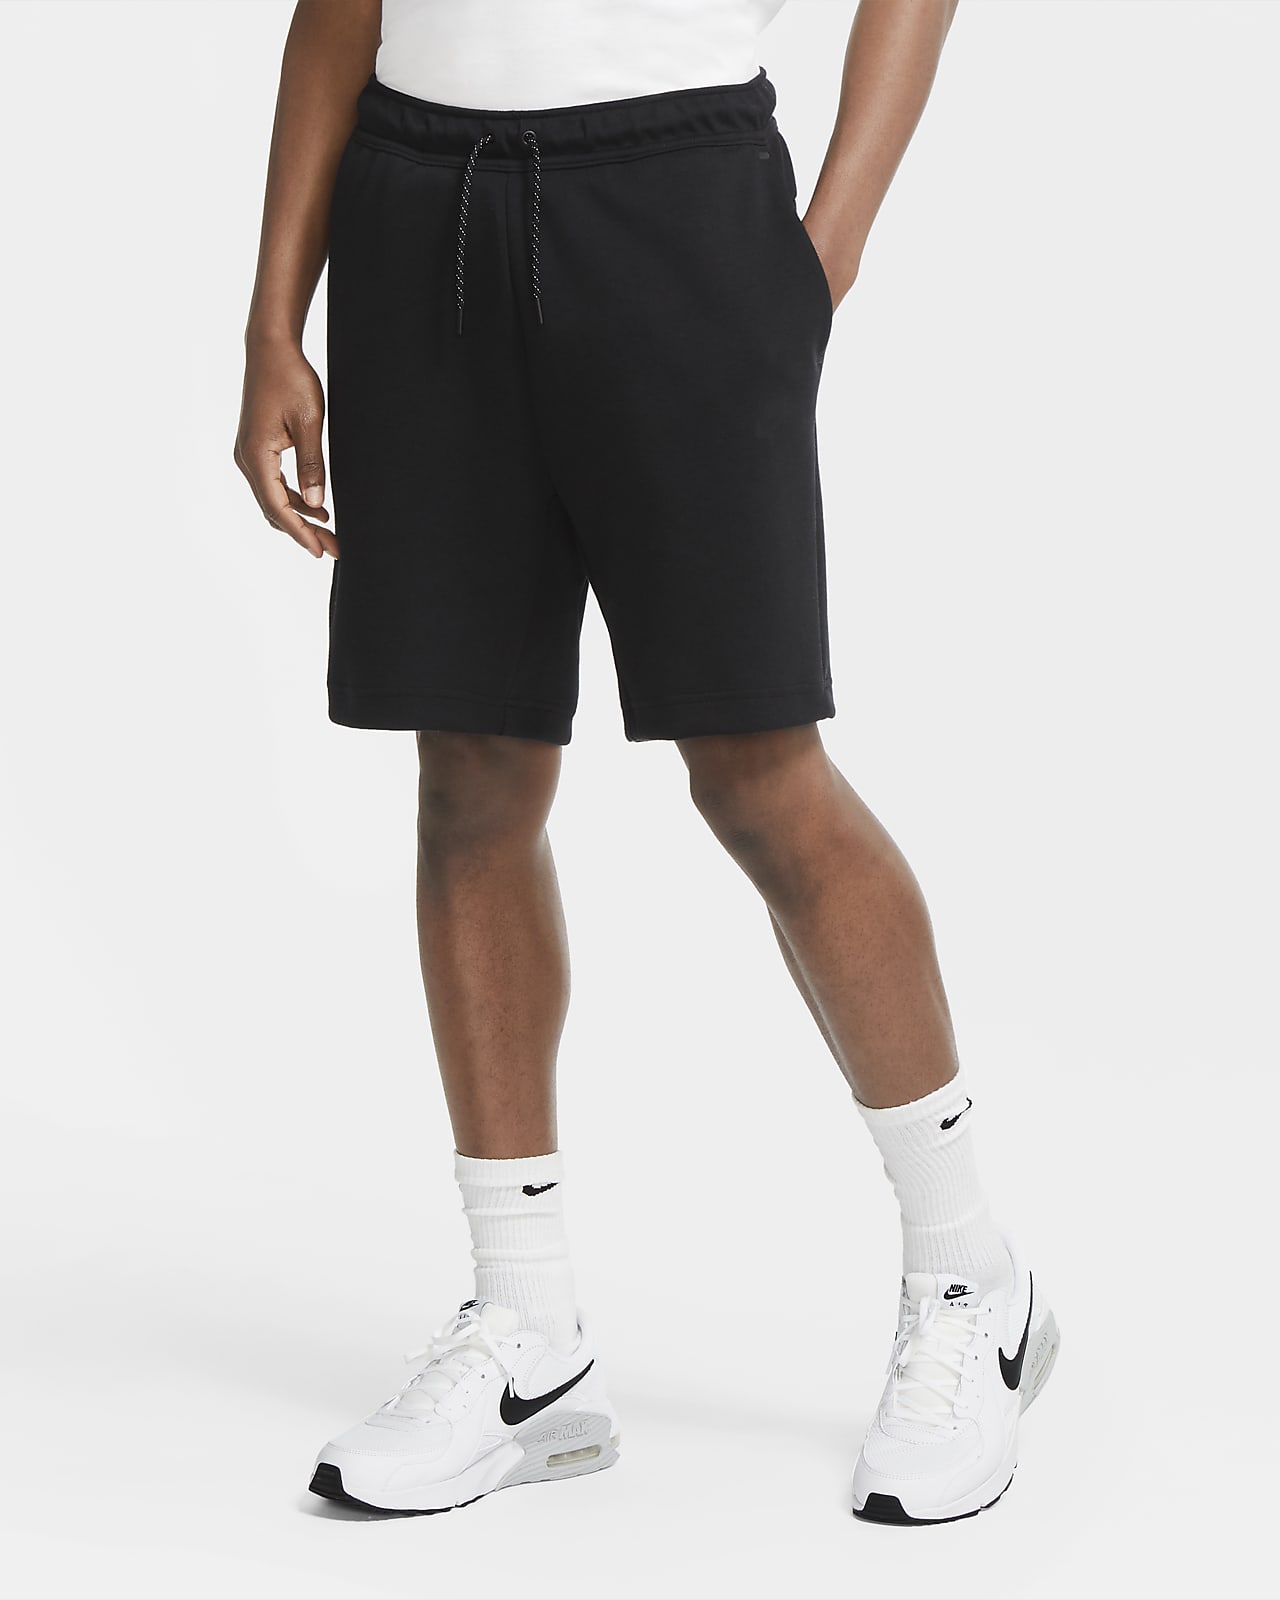 Gezond Veel gevaarlijke situaties samenzwering Nike Sportswear Tech Fleece Men's Shorts. Nike LU